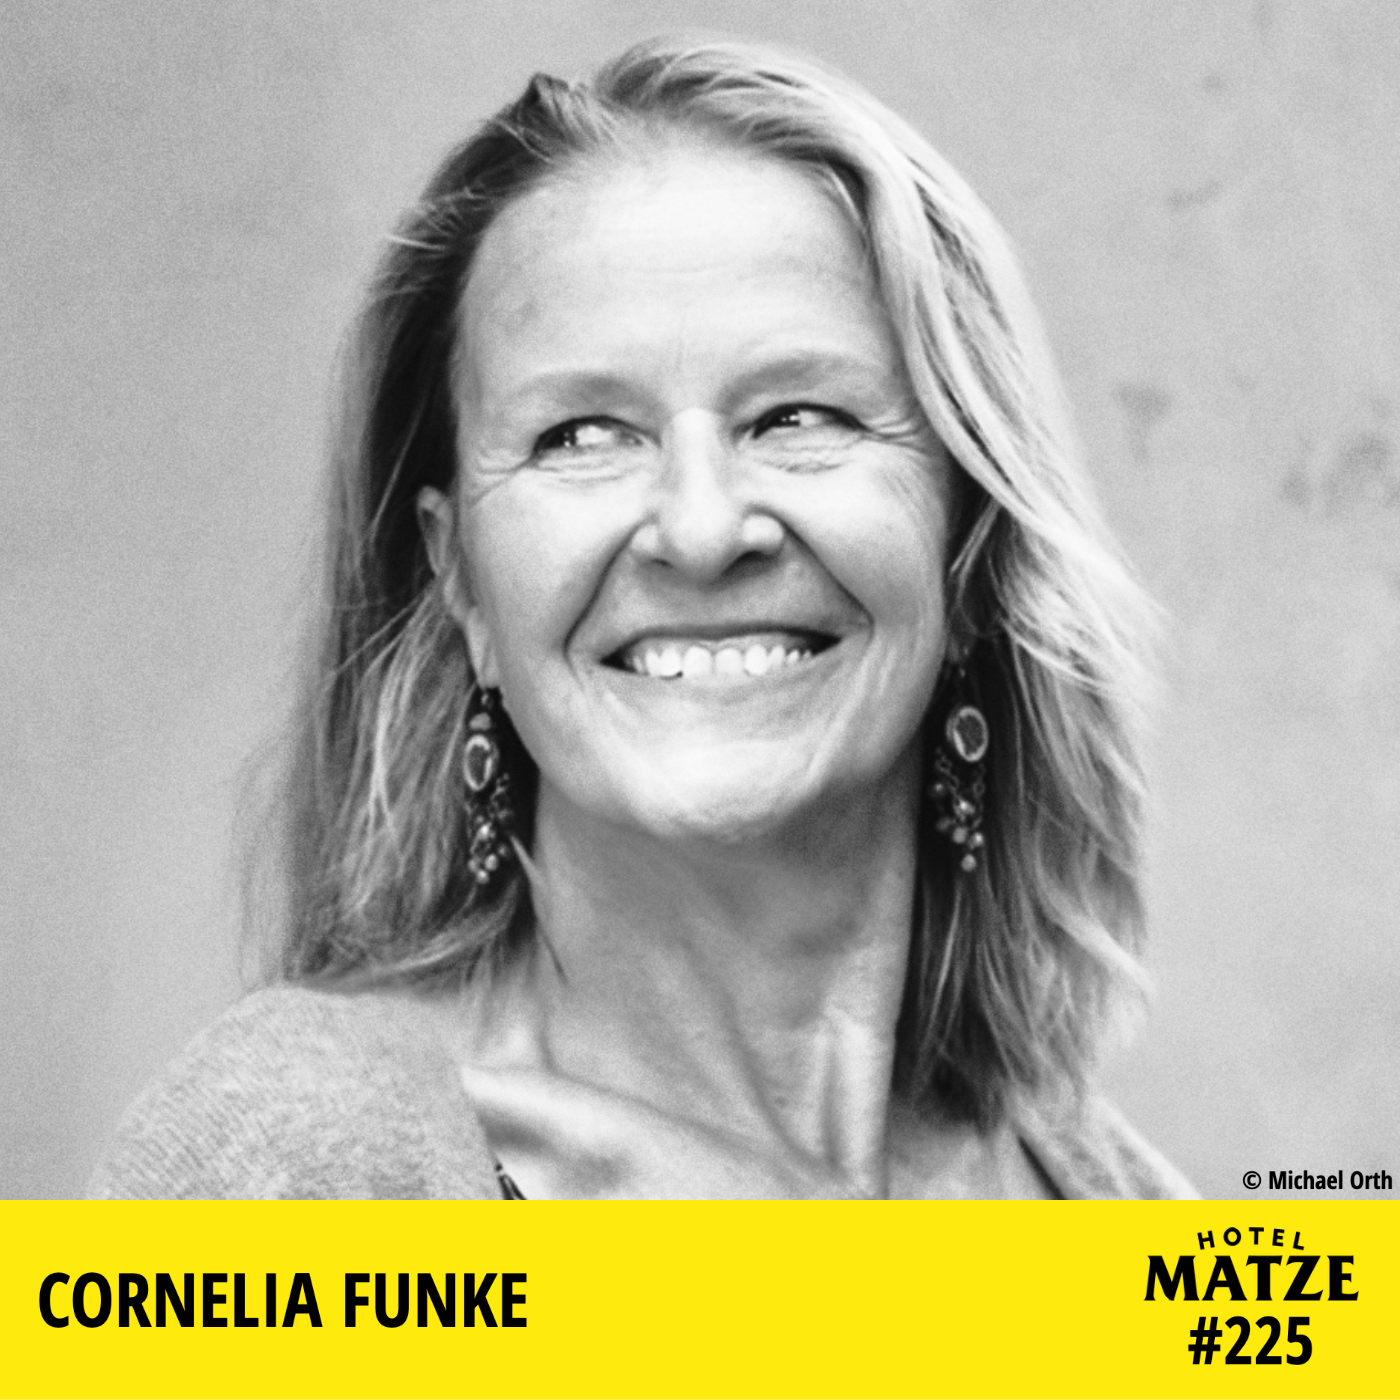 Cornelia Funke – Warum ist unsere Welt fantastisch?